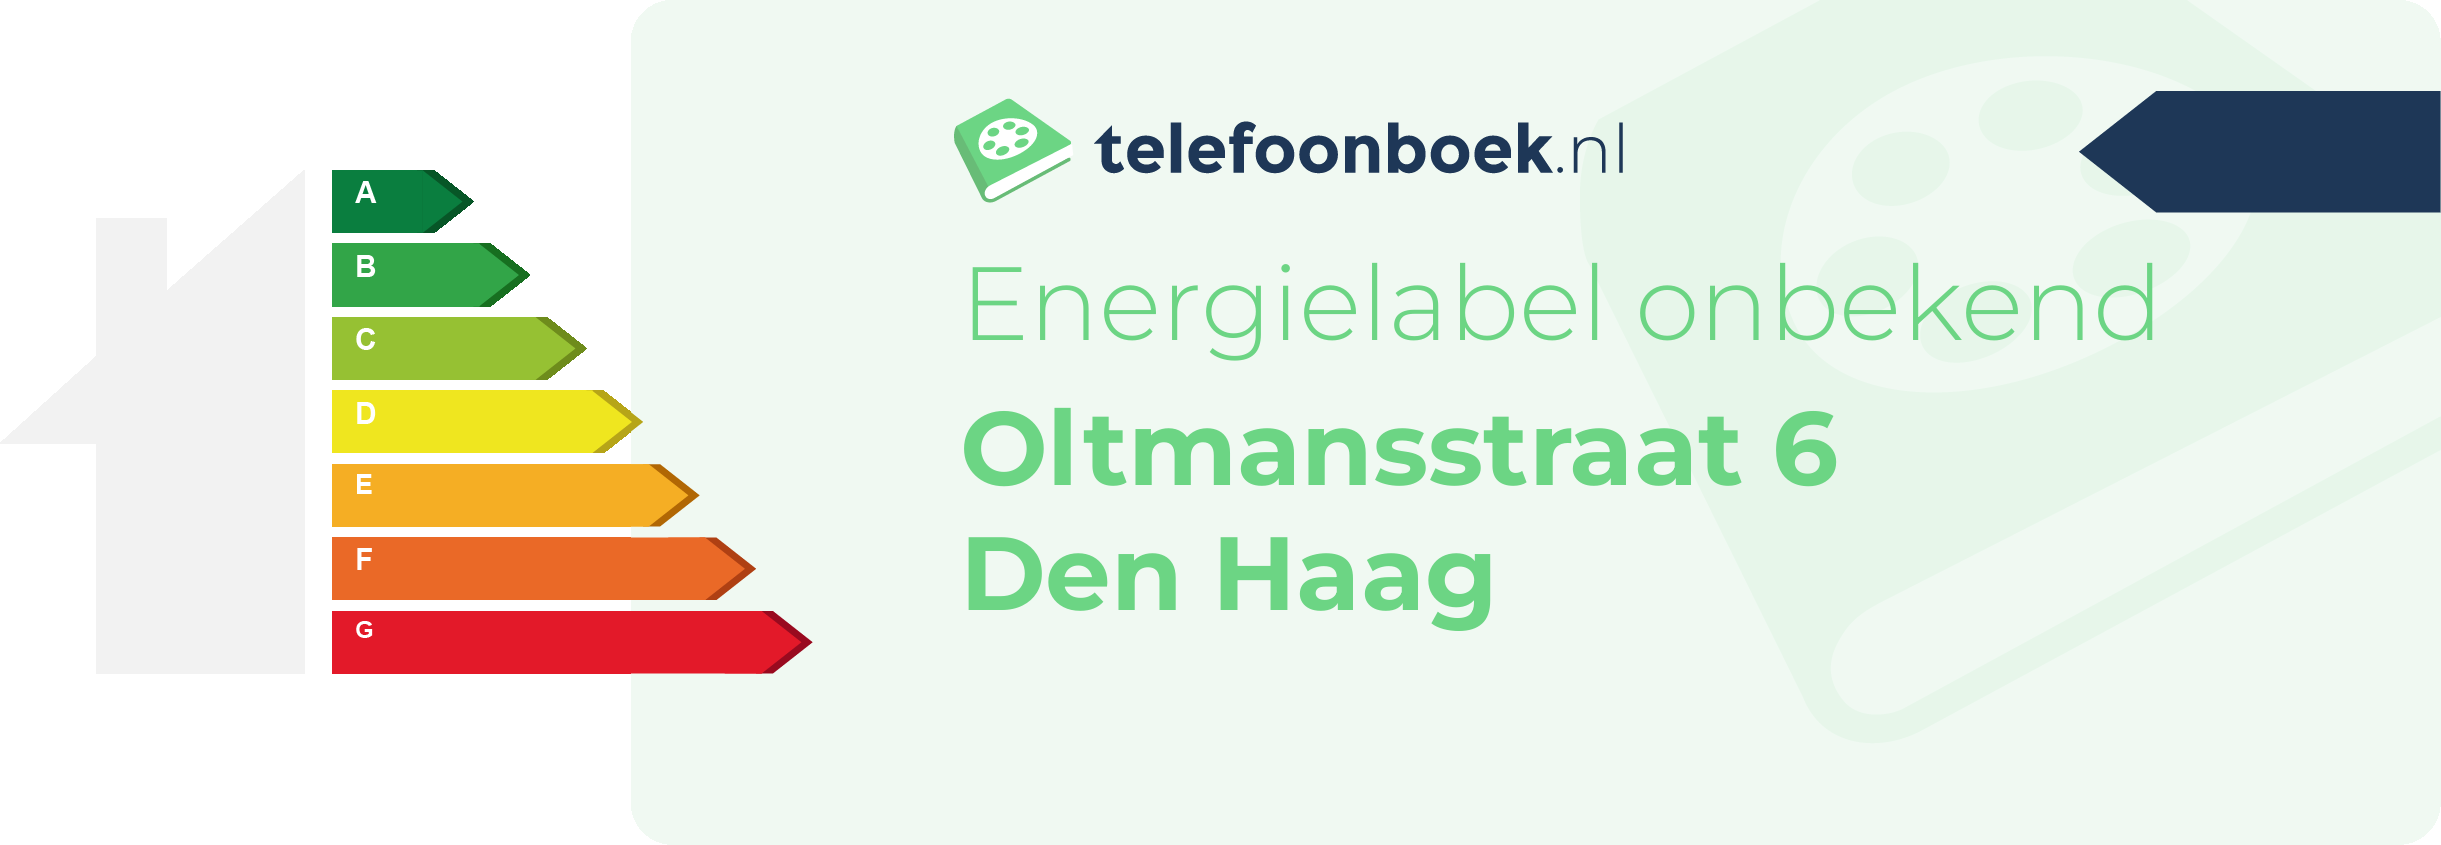 Energielabel Oltmansstraat 6 Den Haag